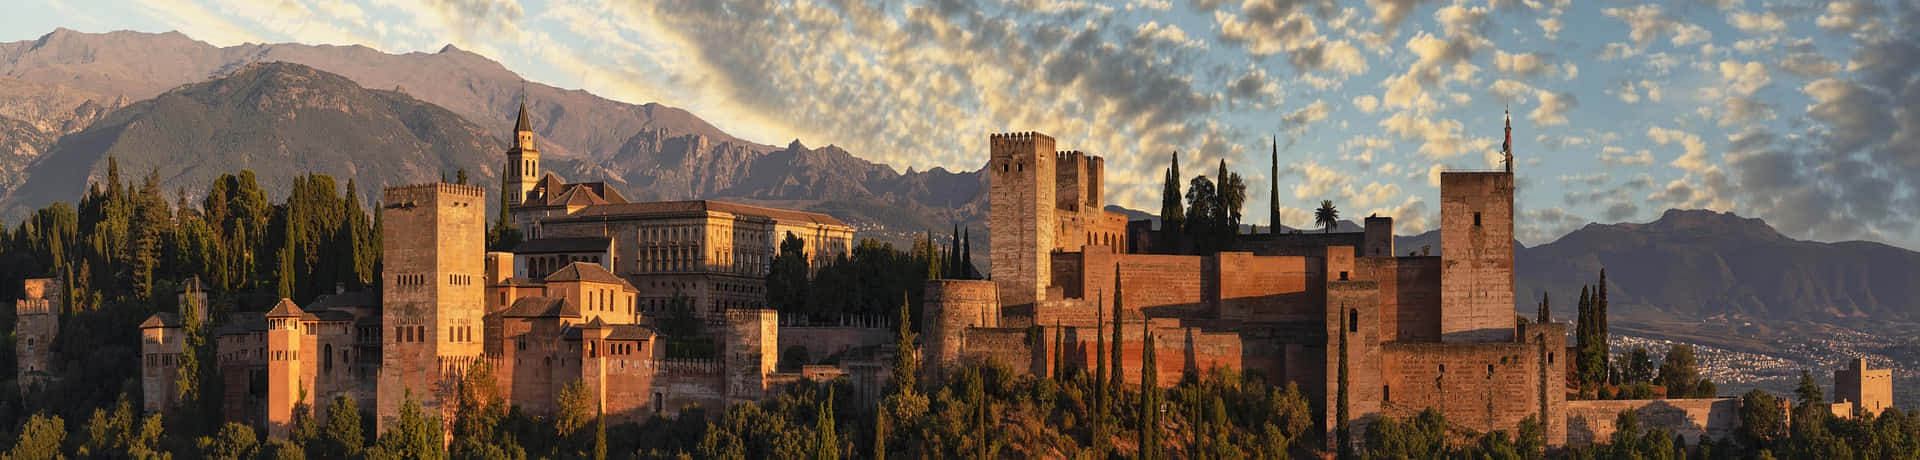 Smuk Alhambra Slot Panorama Billede